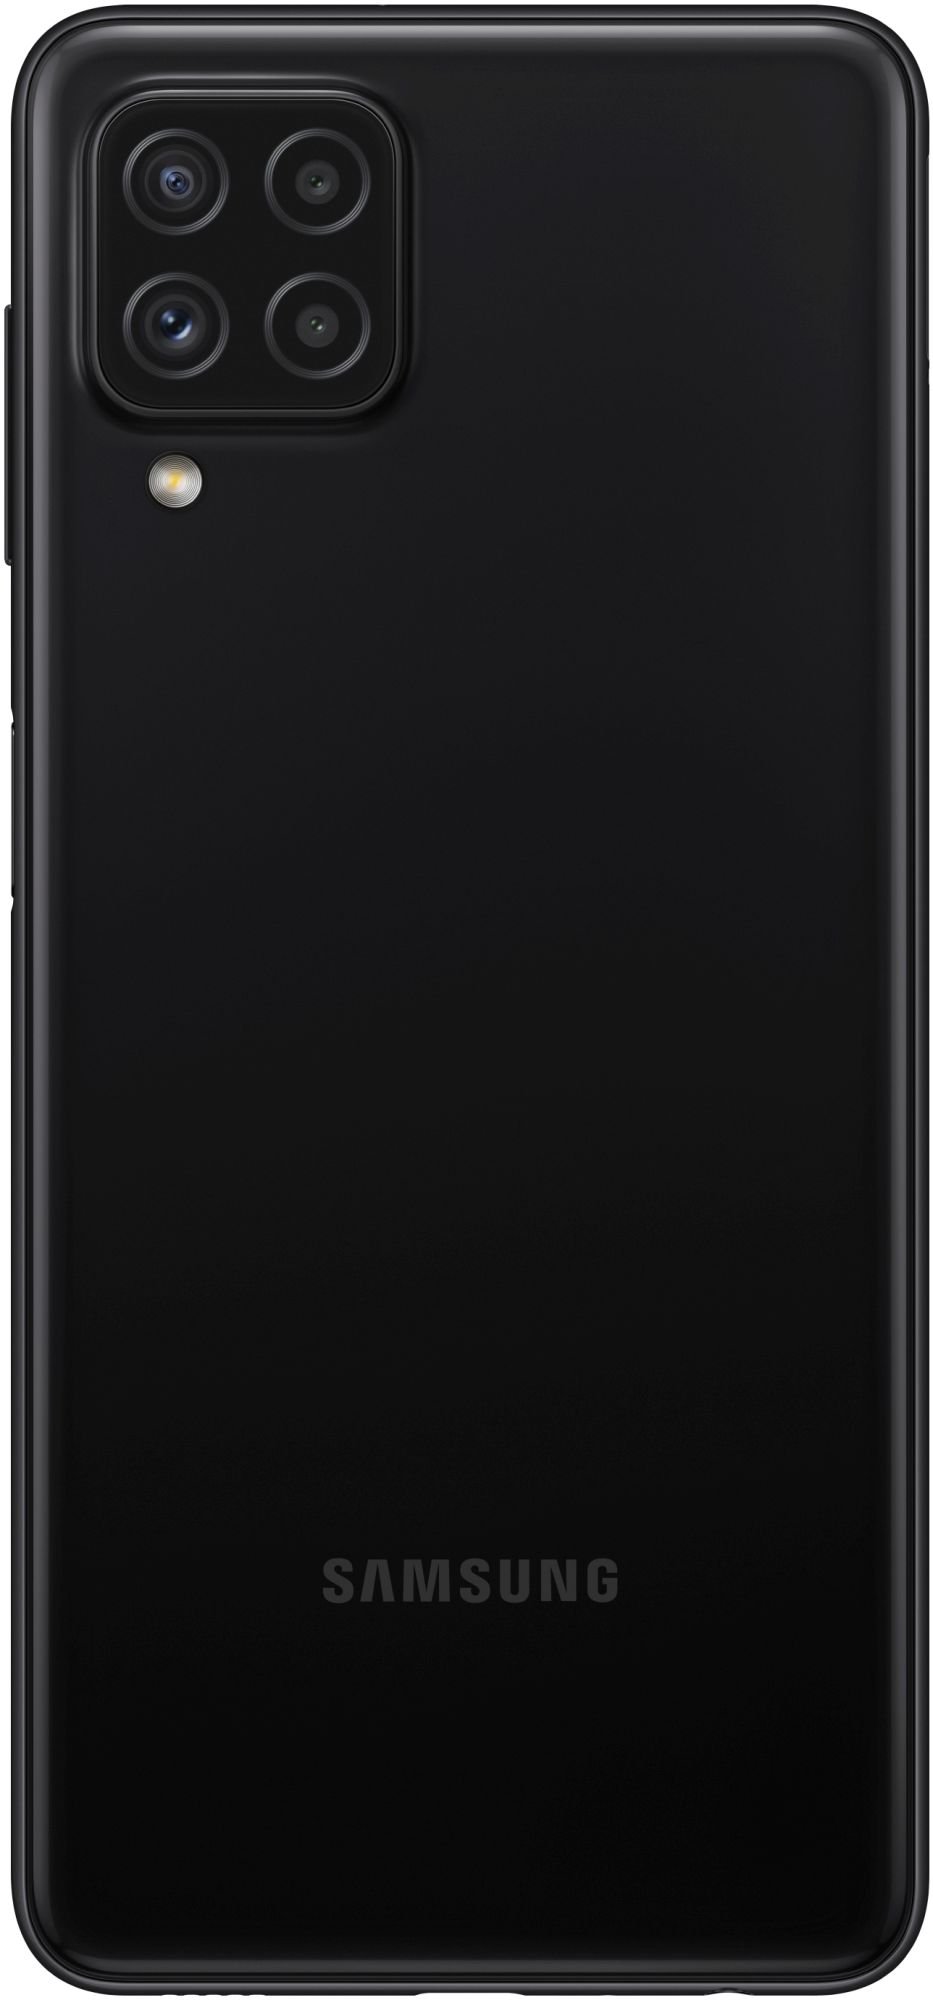 Samsung Galaxy A22 128GB black